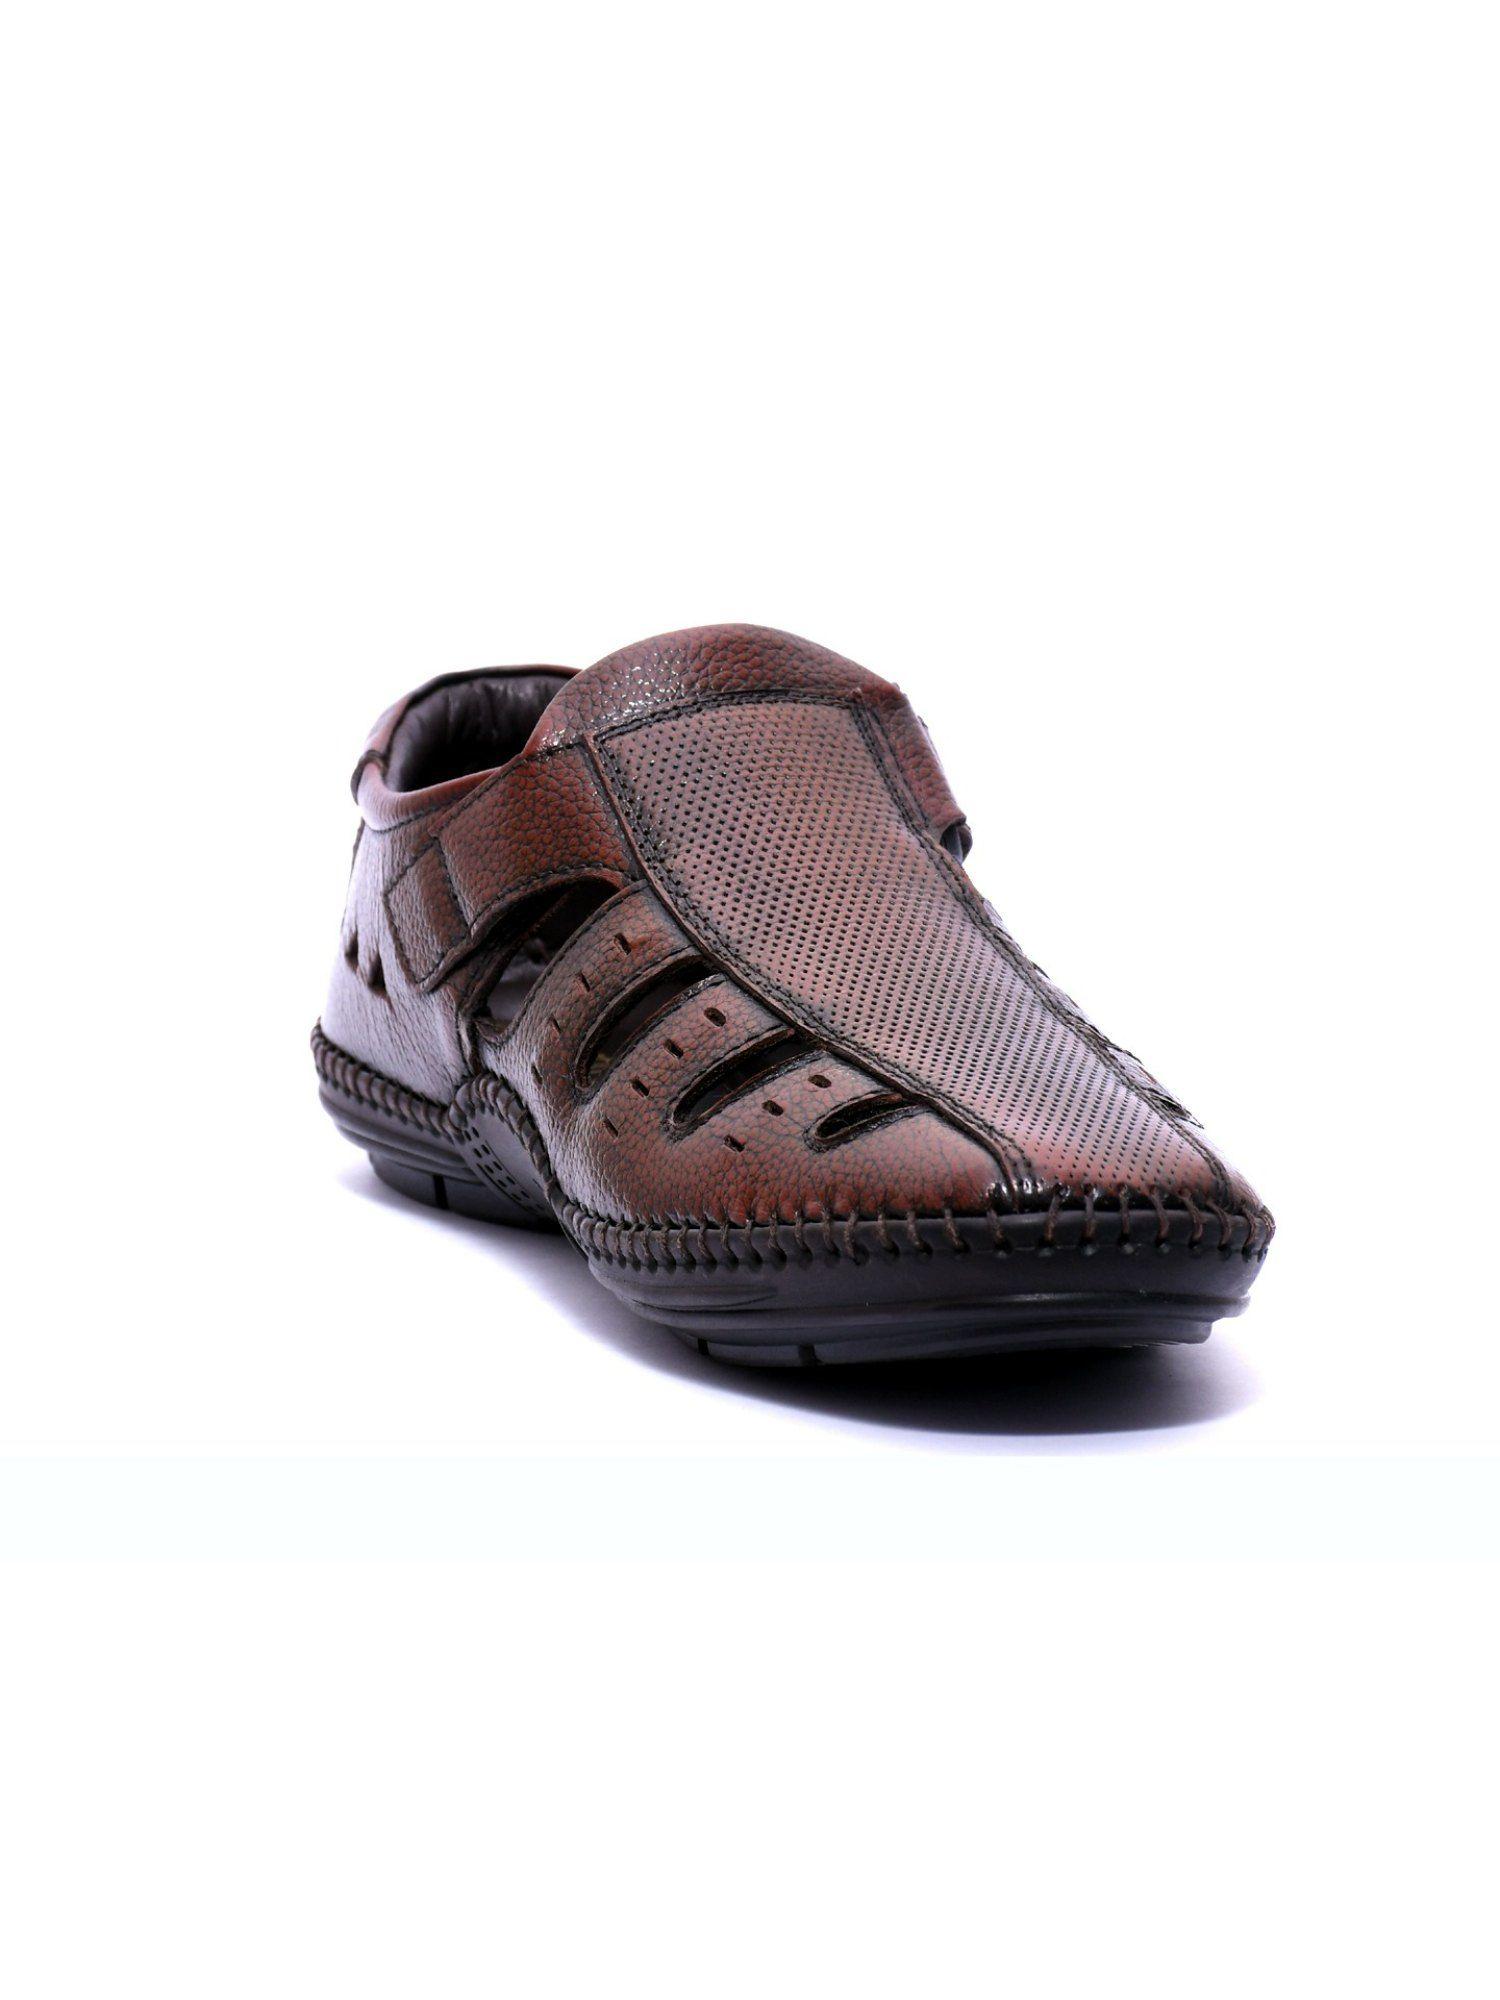 buckaroo: crystal fullgrain natural leather brown casual closed sandal for men